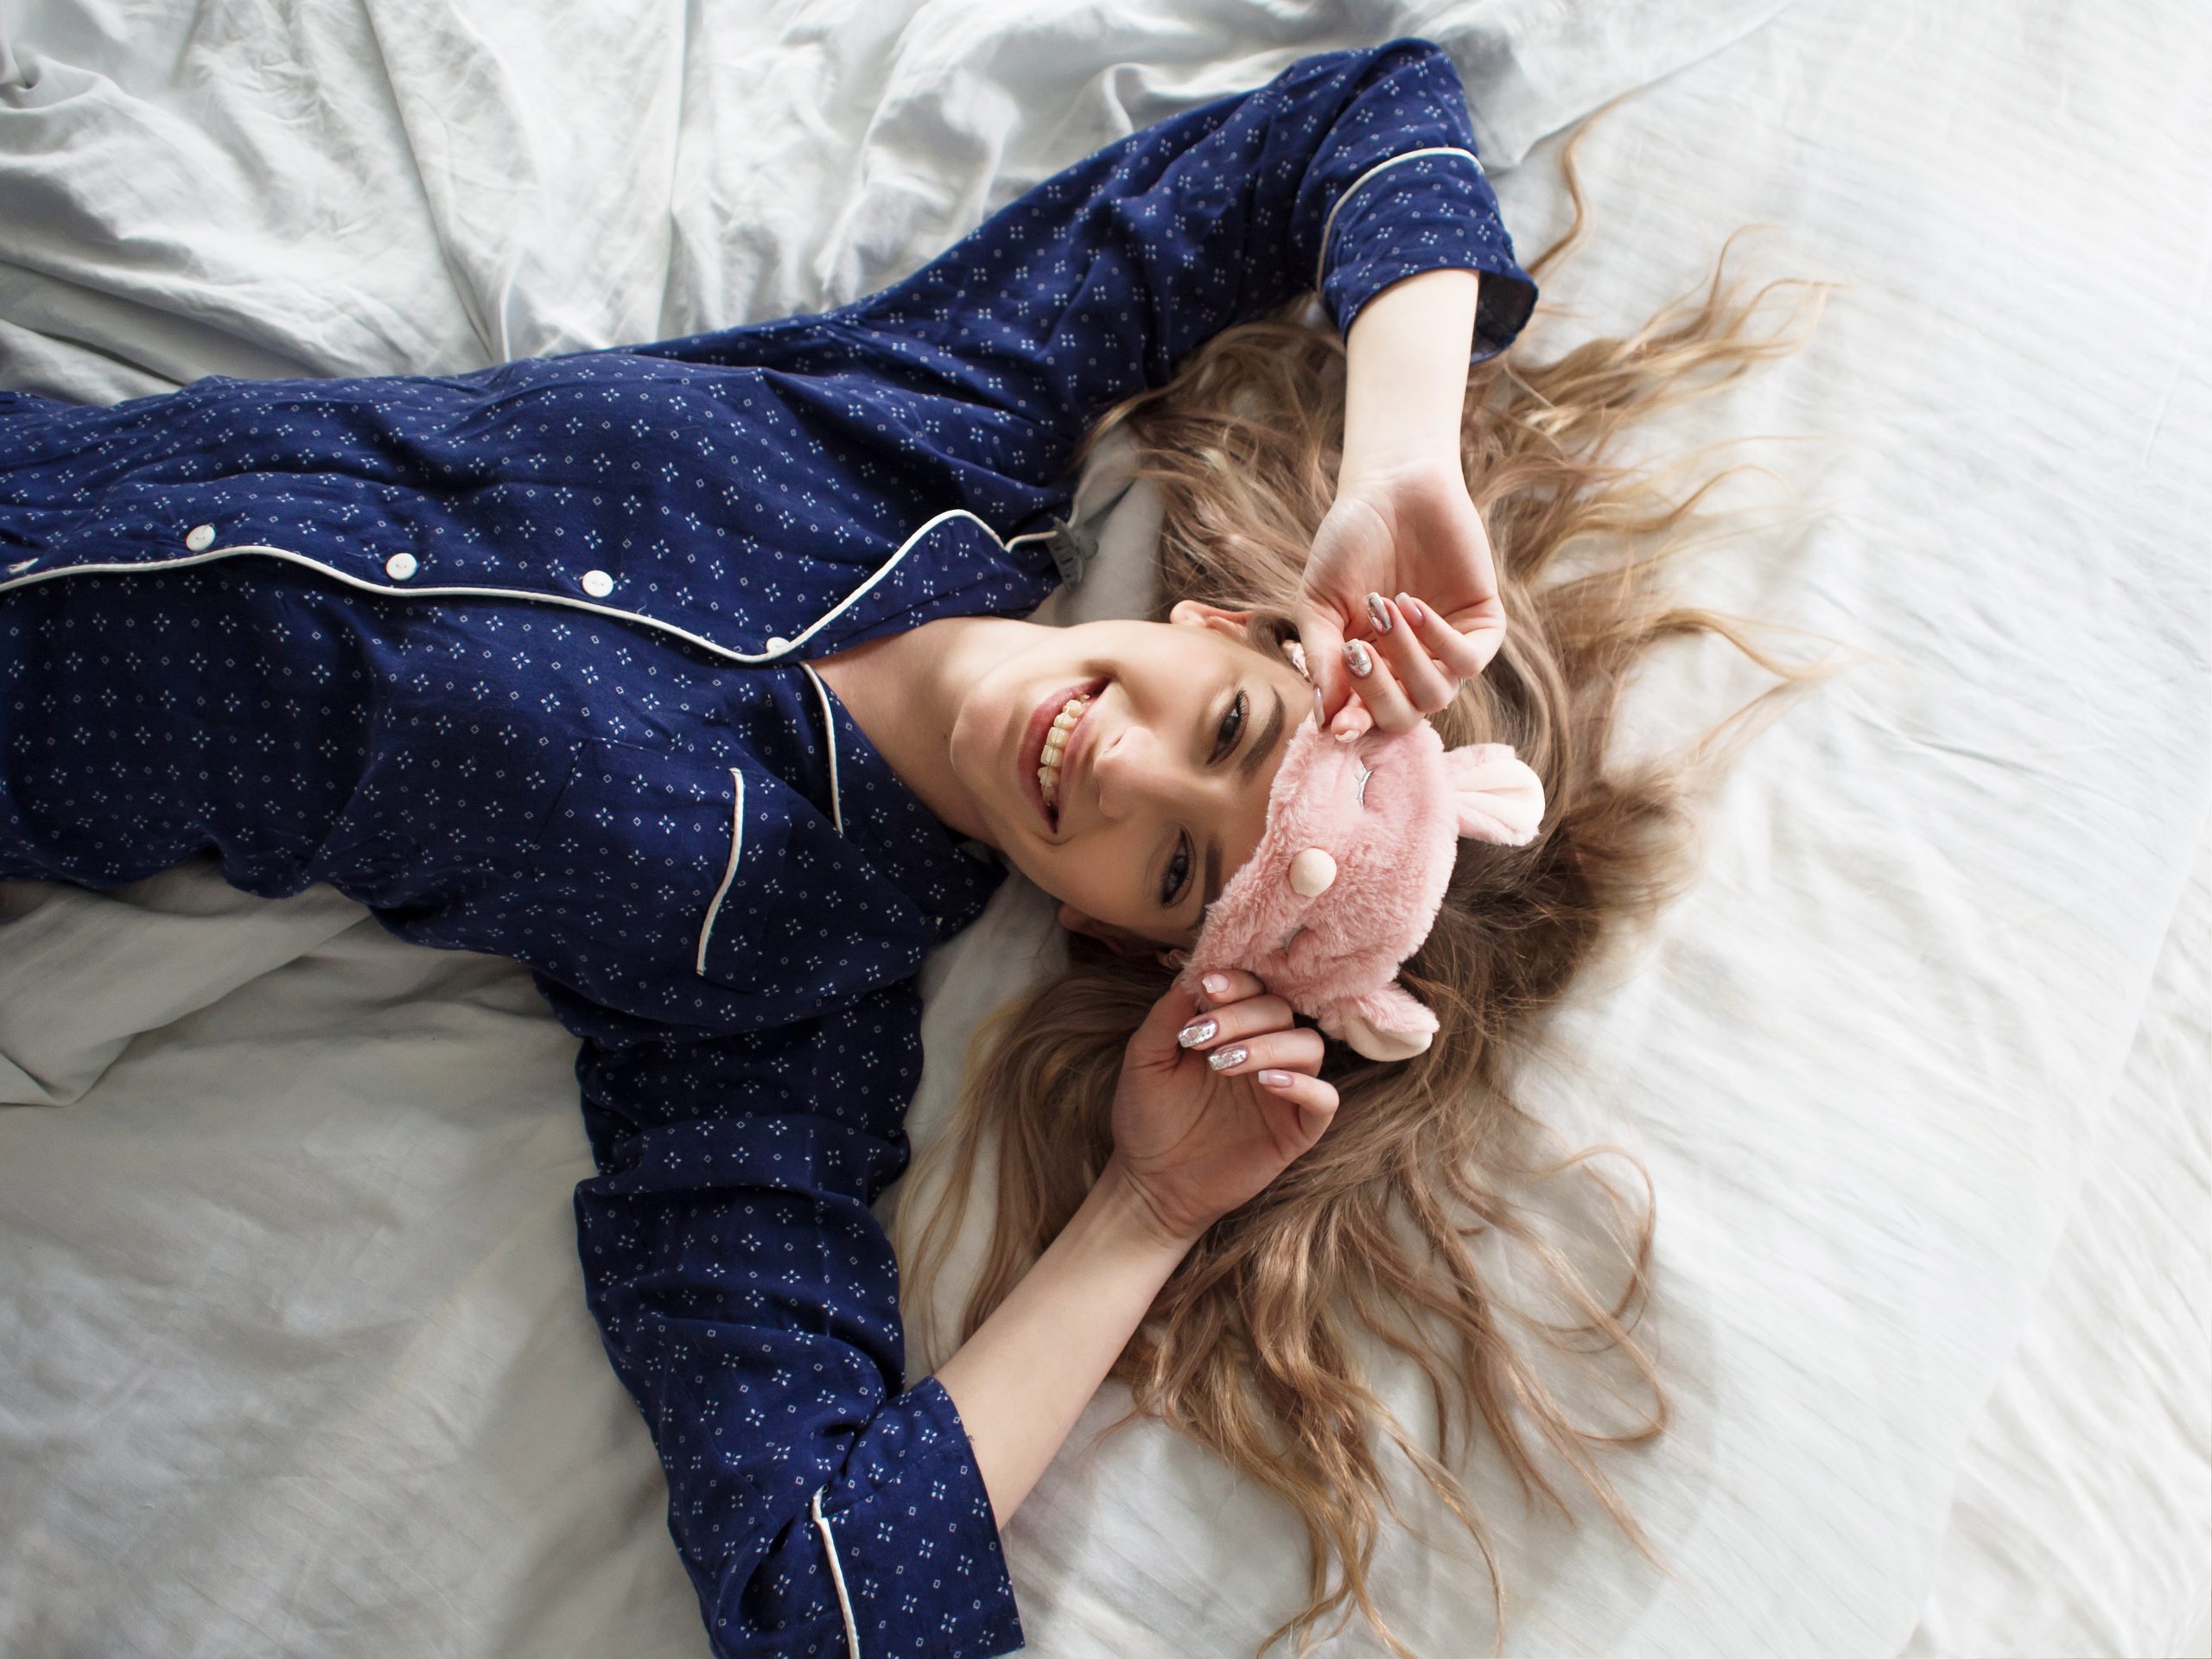 Feine Blondine im Bett in blauen Schlafanzügen und Schlafmaske, Draufsicht